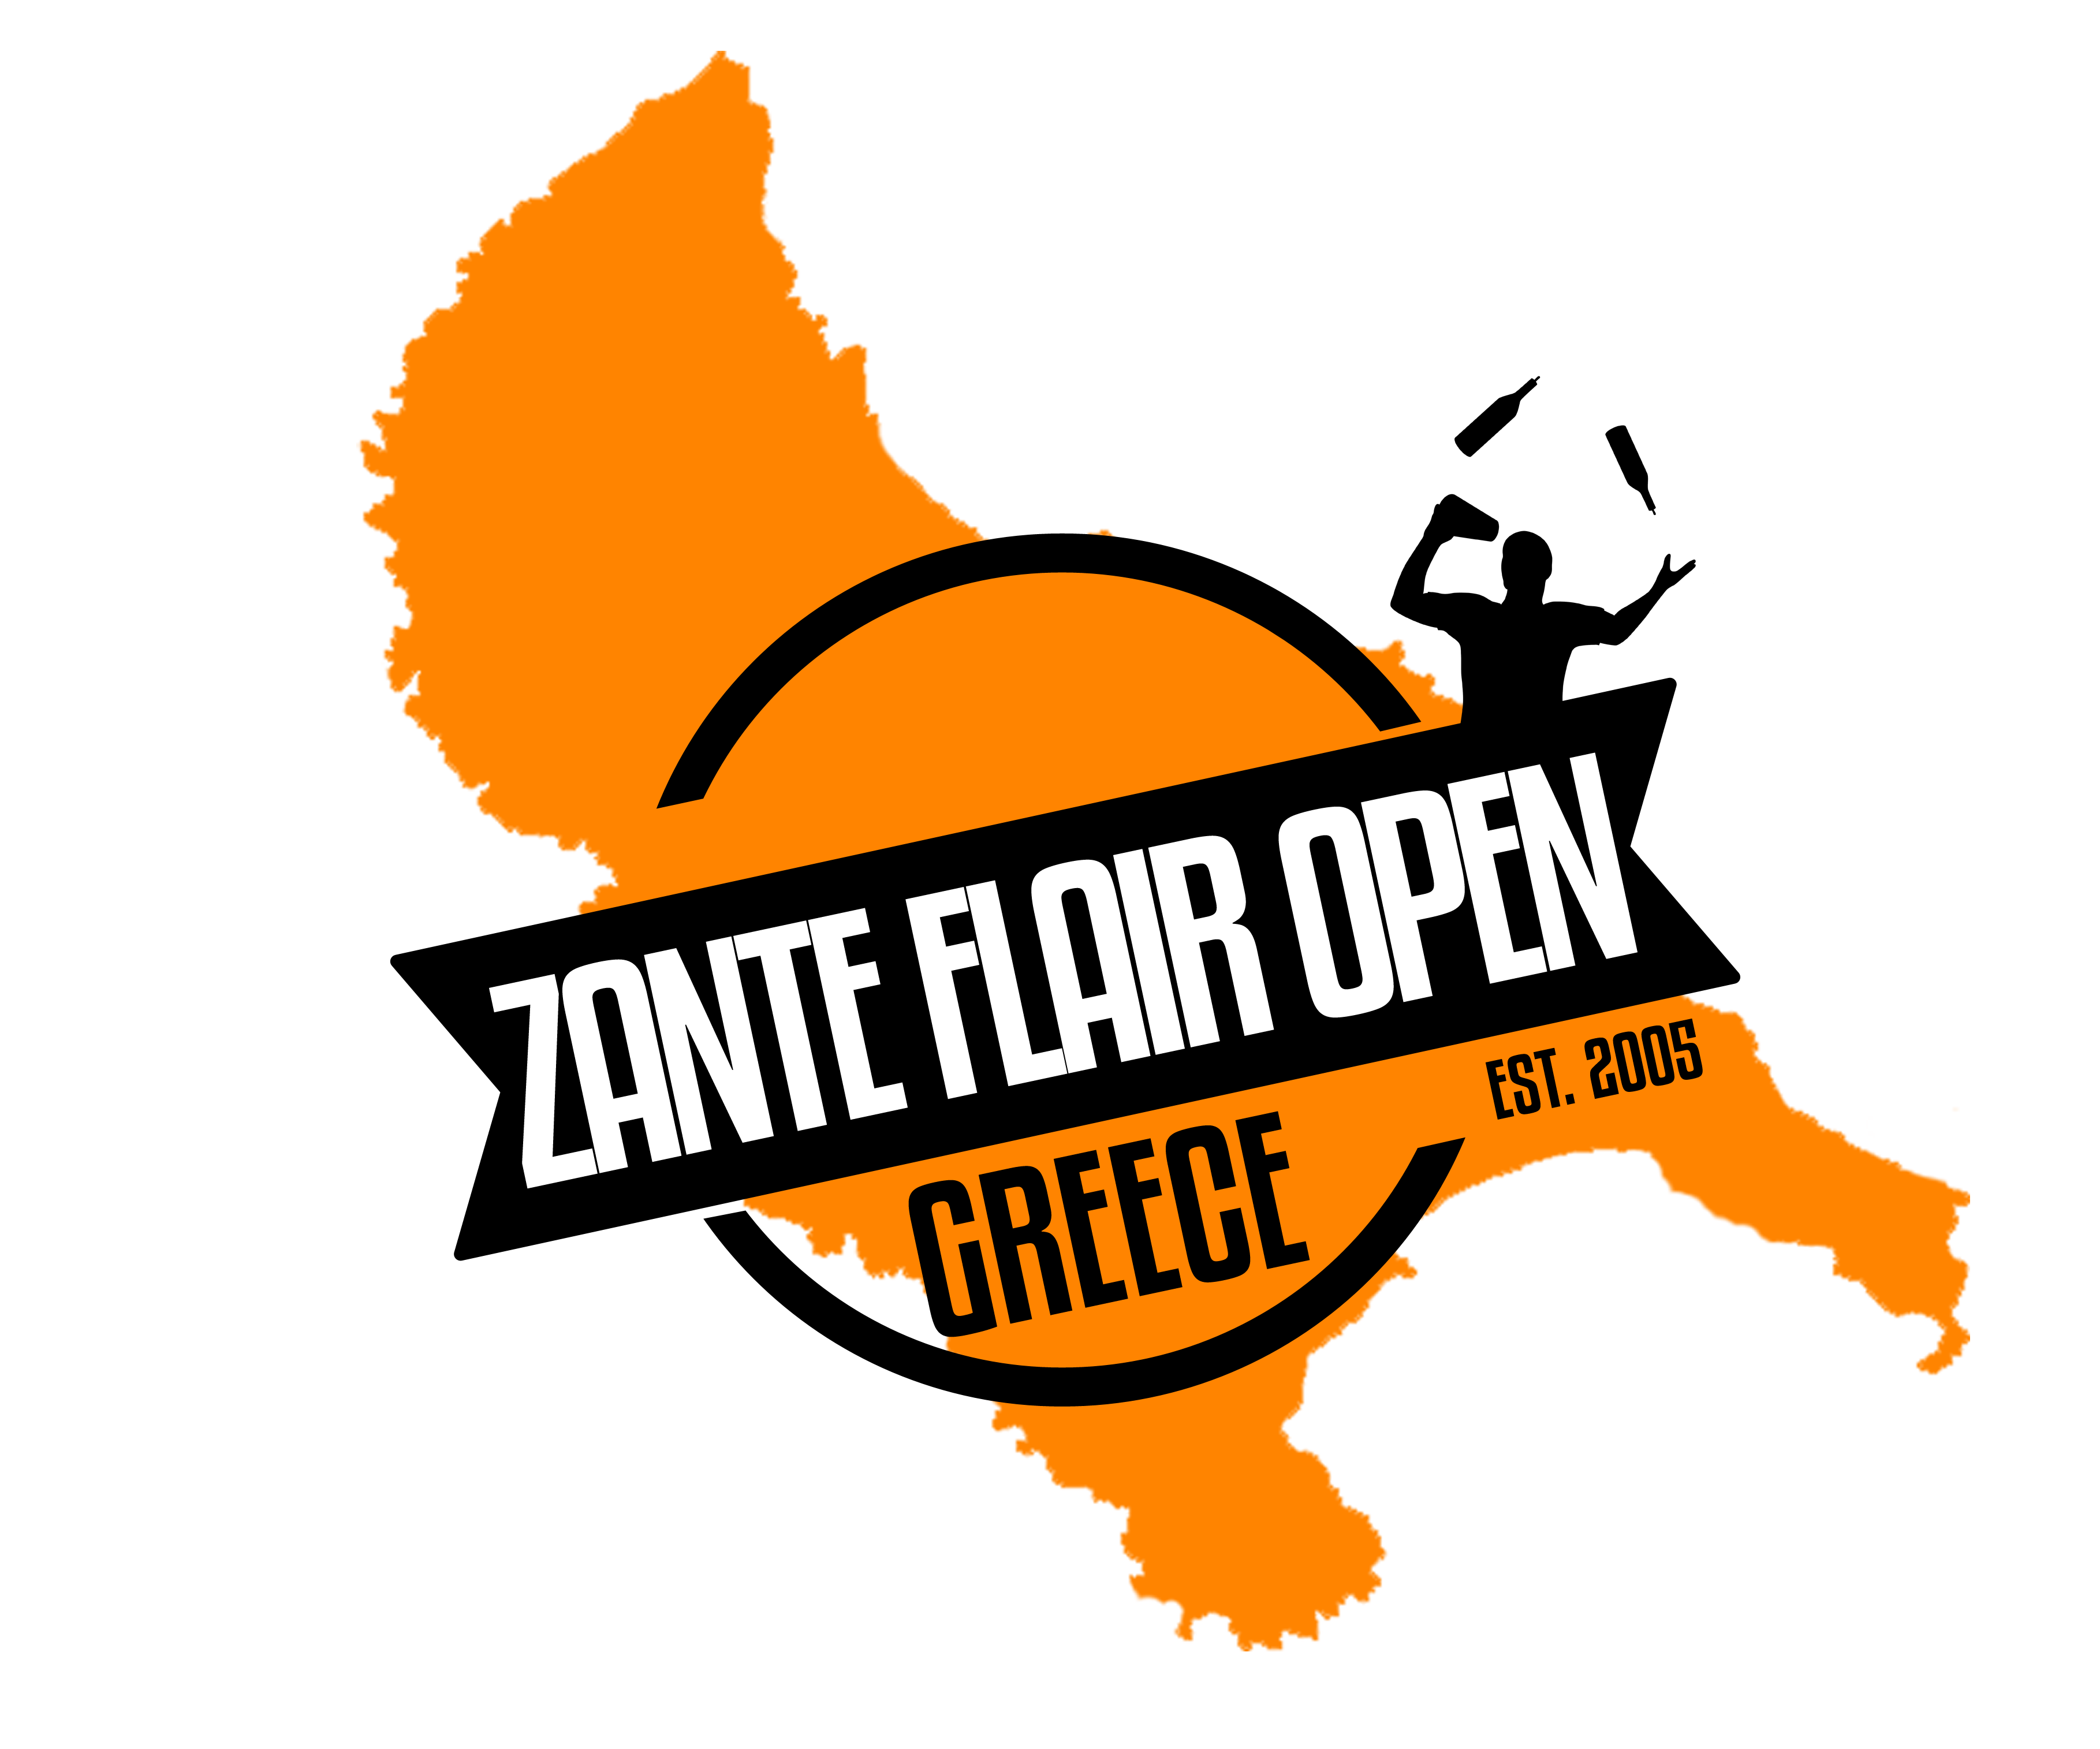 Zante Flair Open